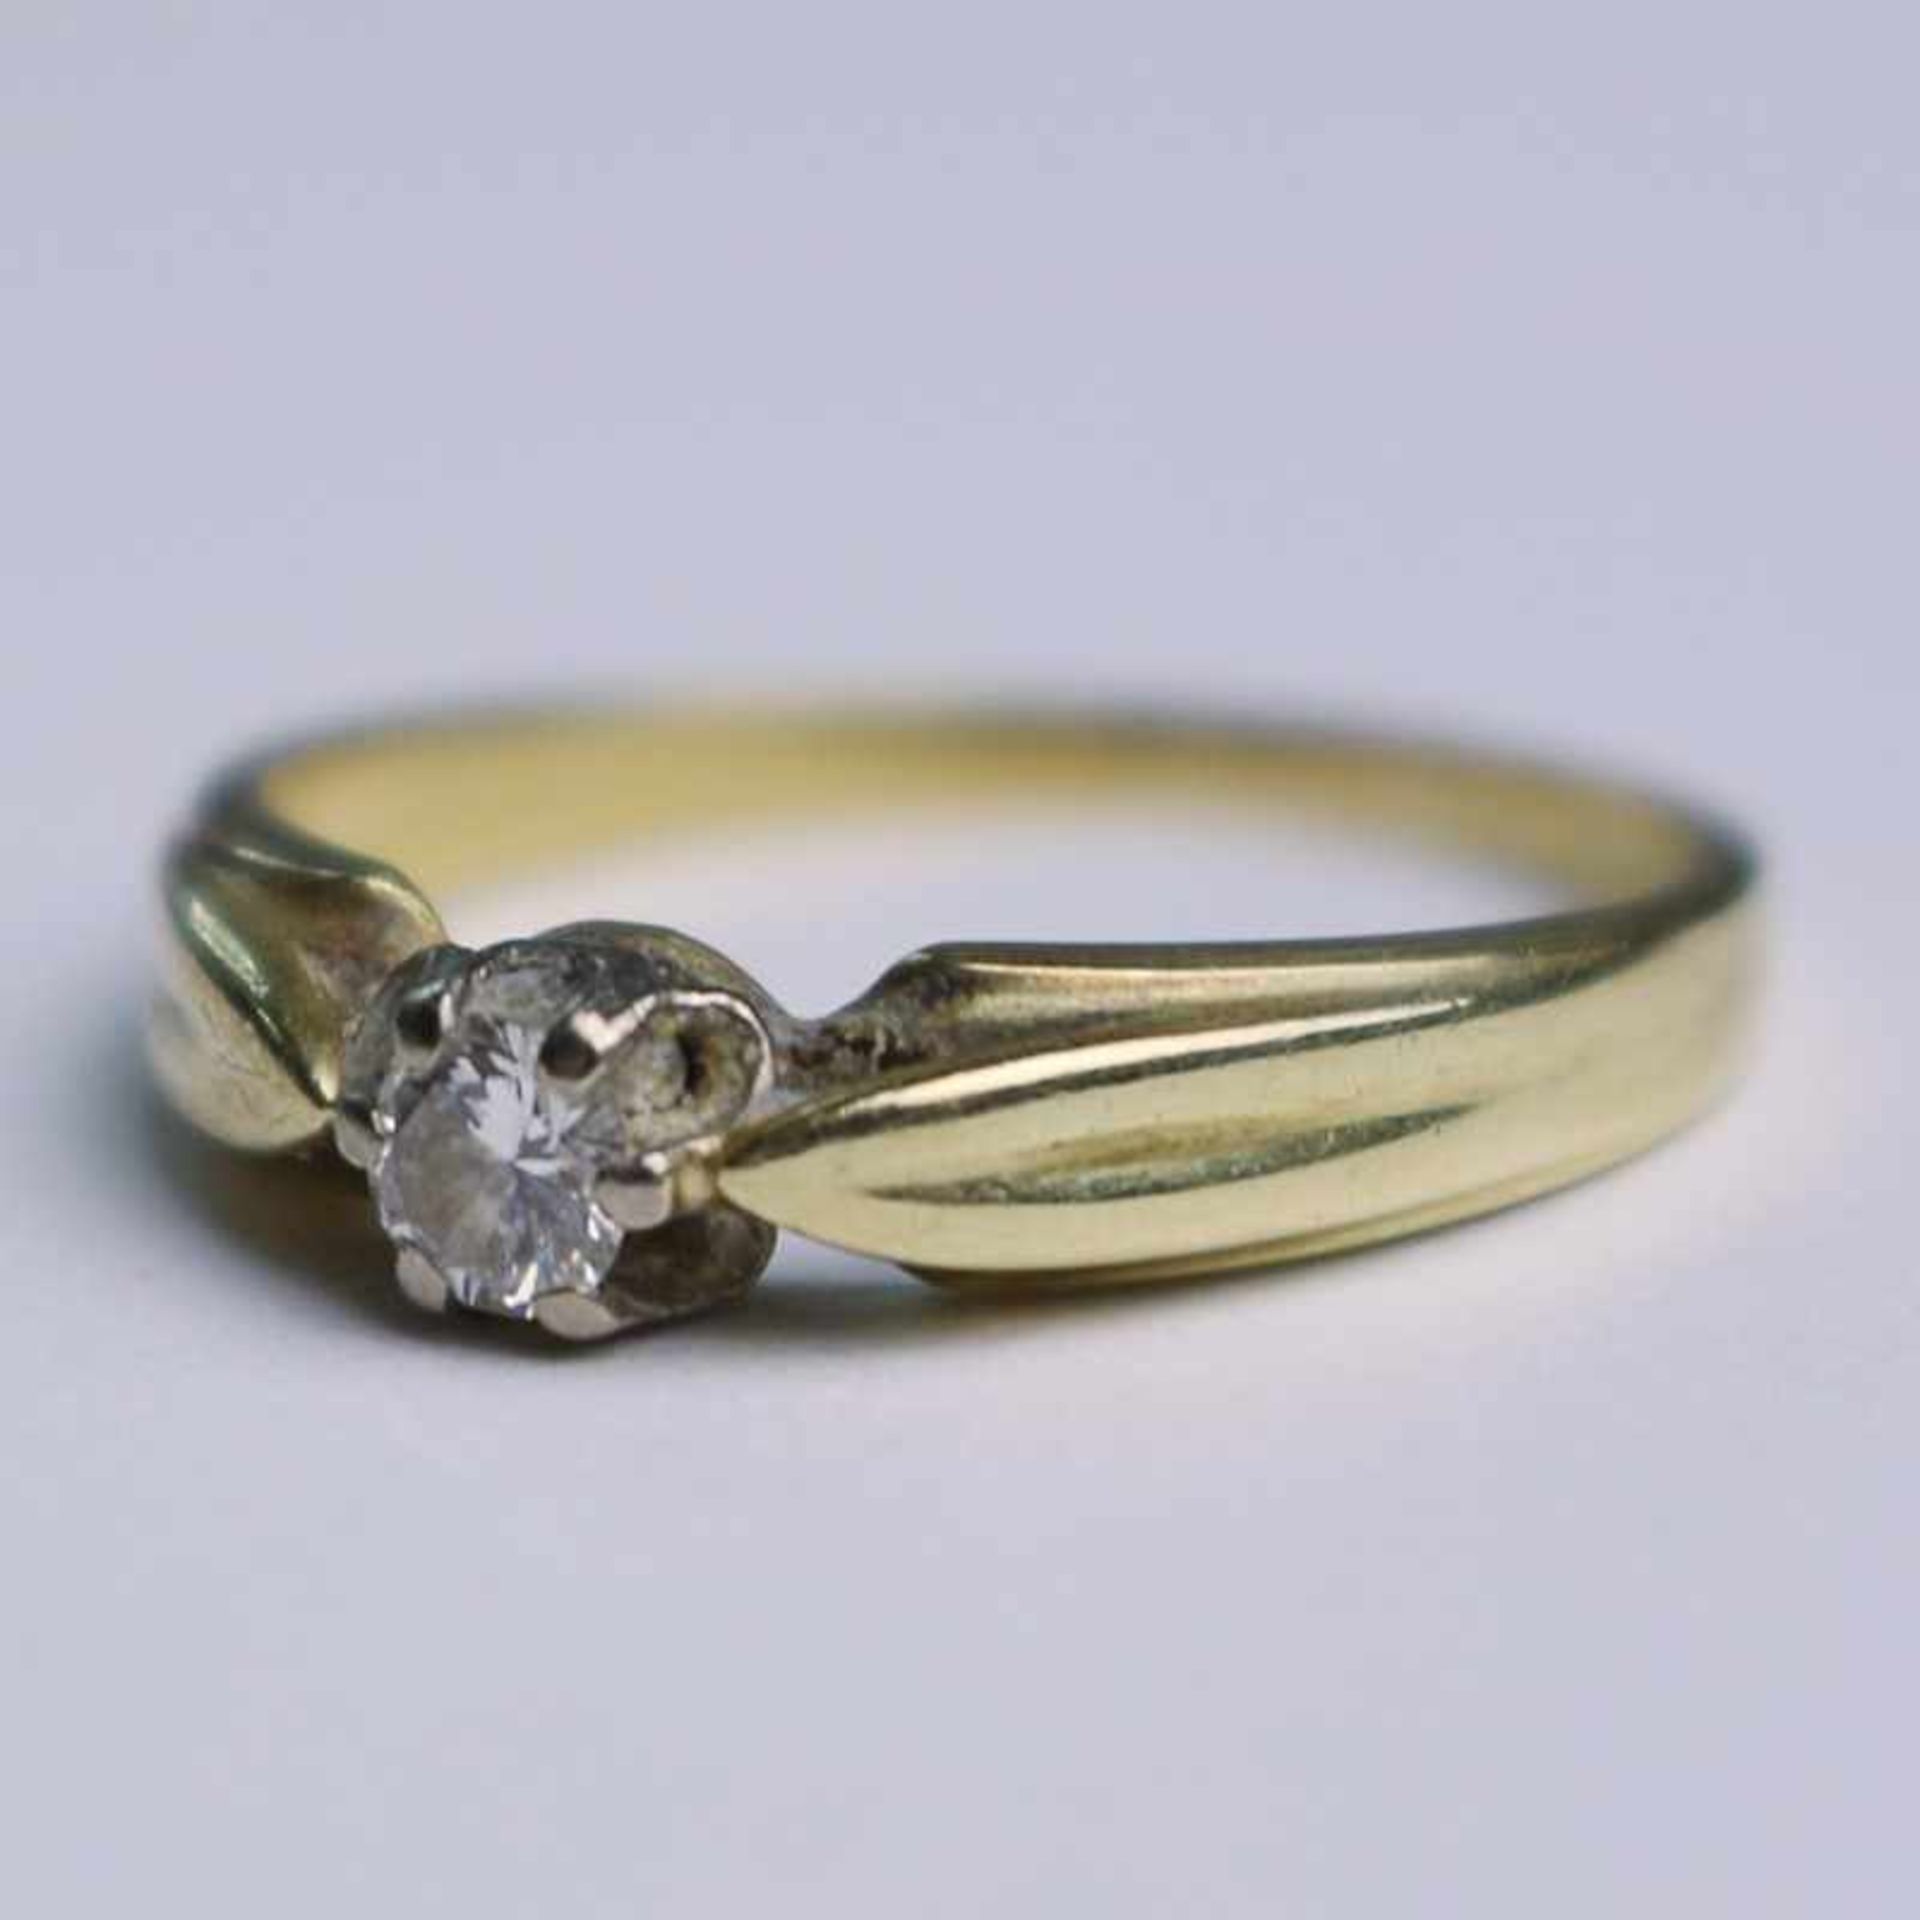 Damenring - Diamant GG 585, Ringkopf besetzt mit einem Diamant in Krappenfassung, gem.0,18ct,